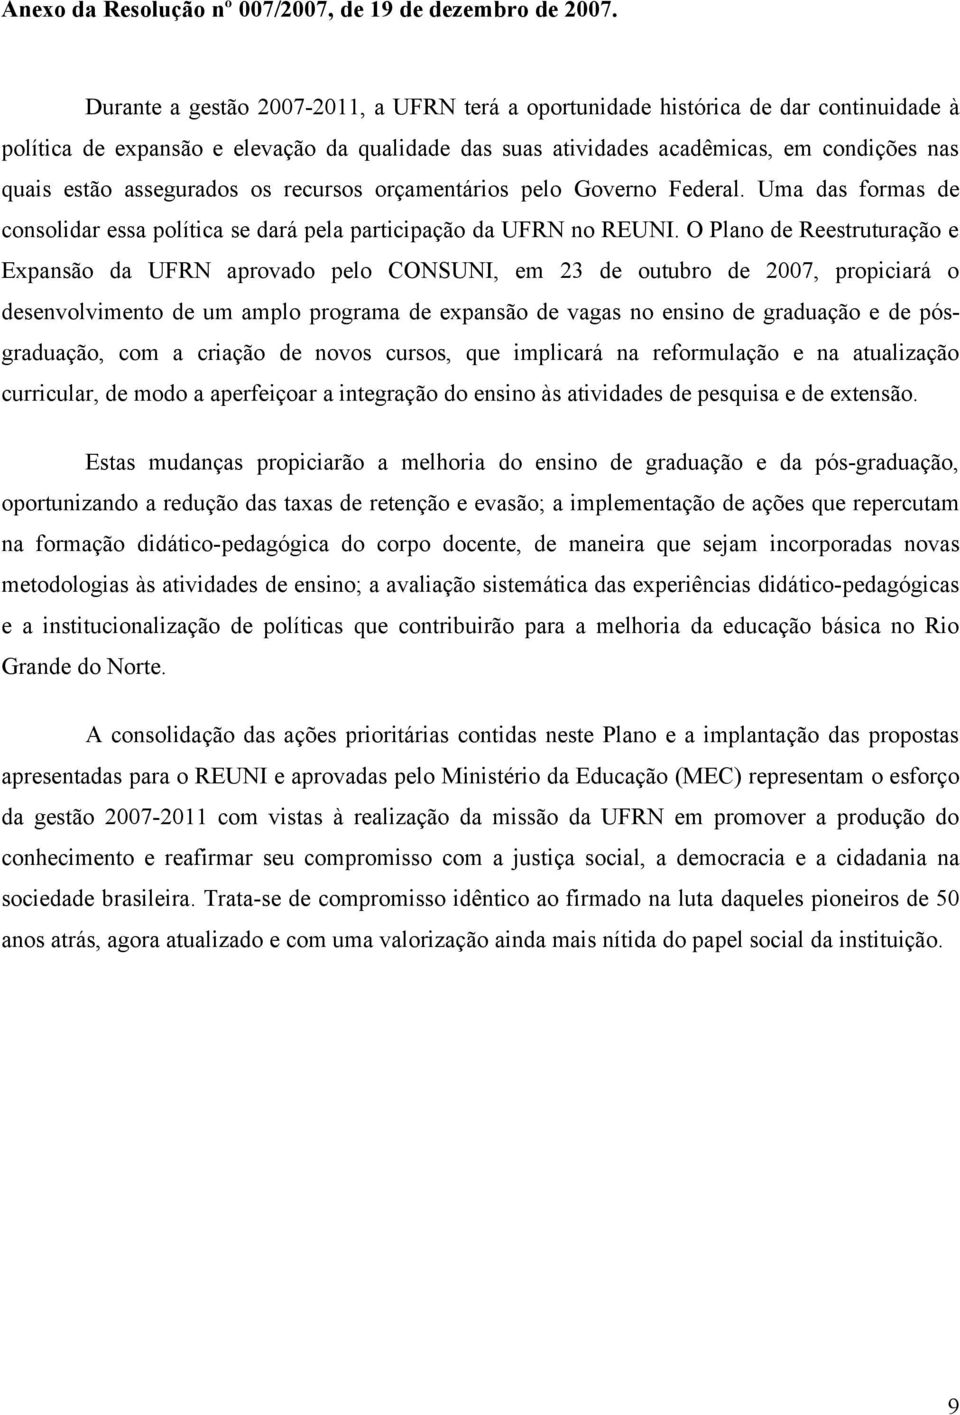 O Plano de Reestruturação e Expansão da UFRN aprovado pelo CONSUNI, em 23 de outubro de 2007, propiciará o desenvolvimento de um amplo programa de expansão de vagas no ensino de graduação e de